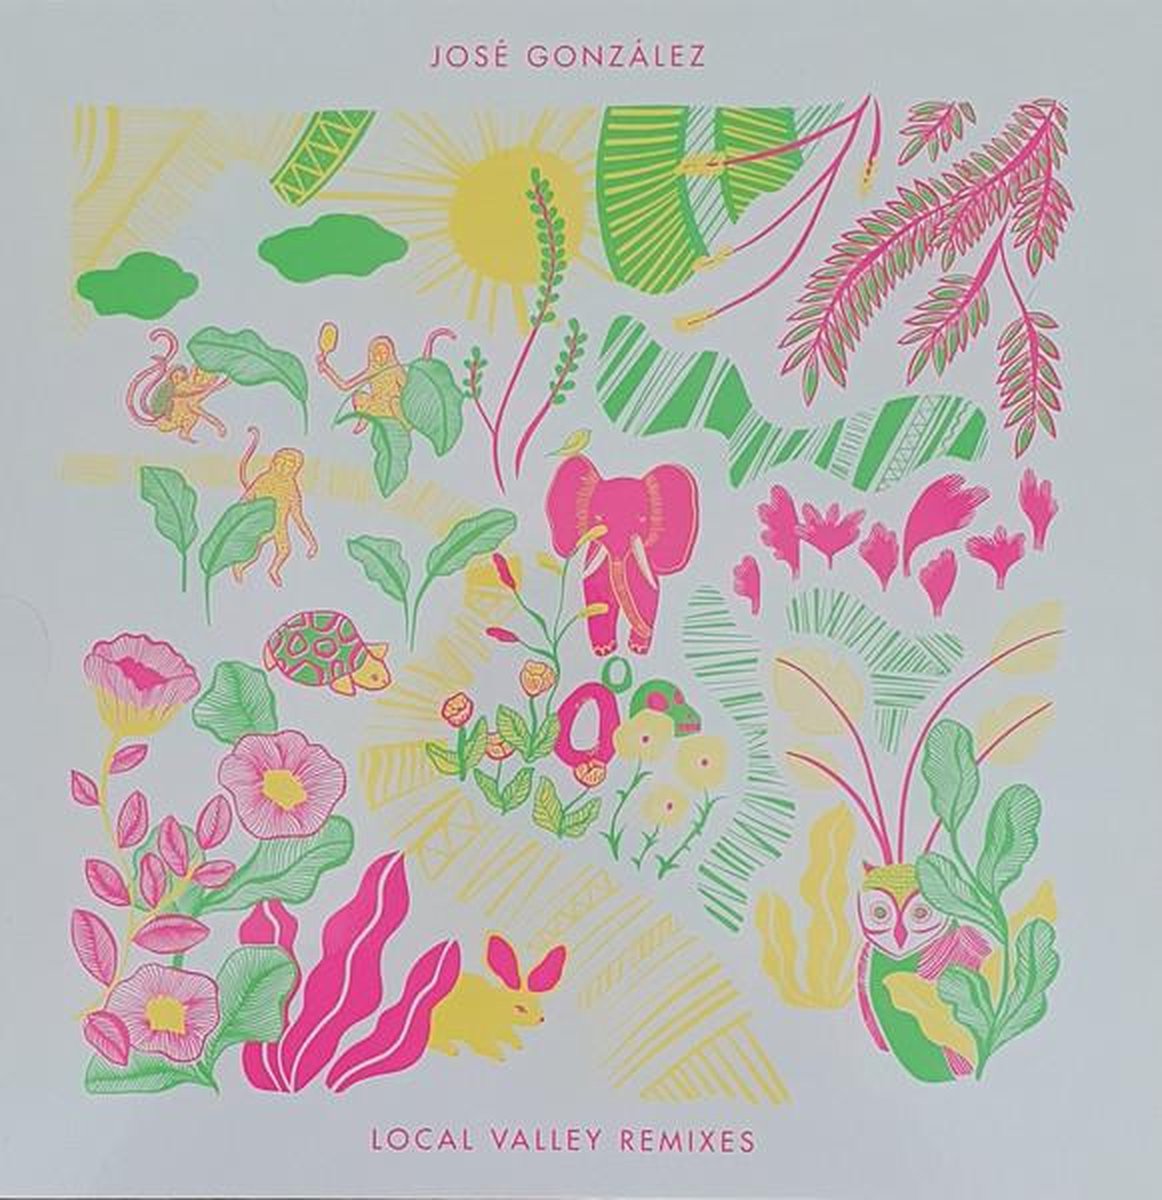 Jose Gonzalez - Local Valley Remixes